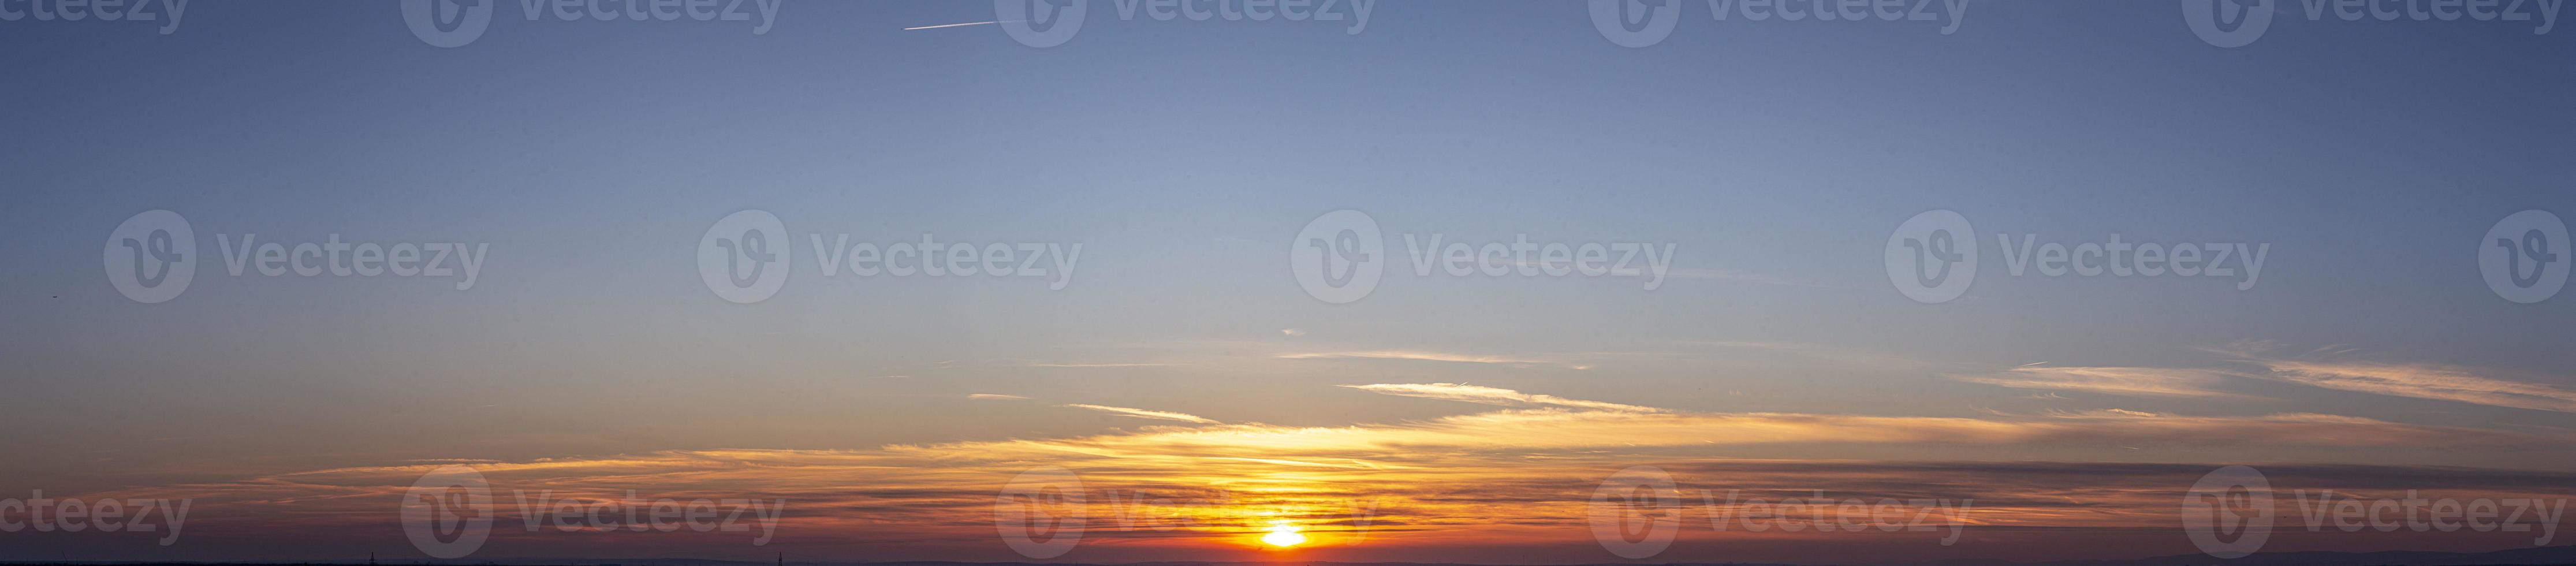 imagem do céu dramático e colorido com sol durante o pôr do sol foto